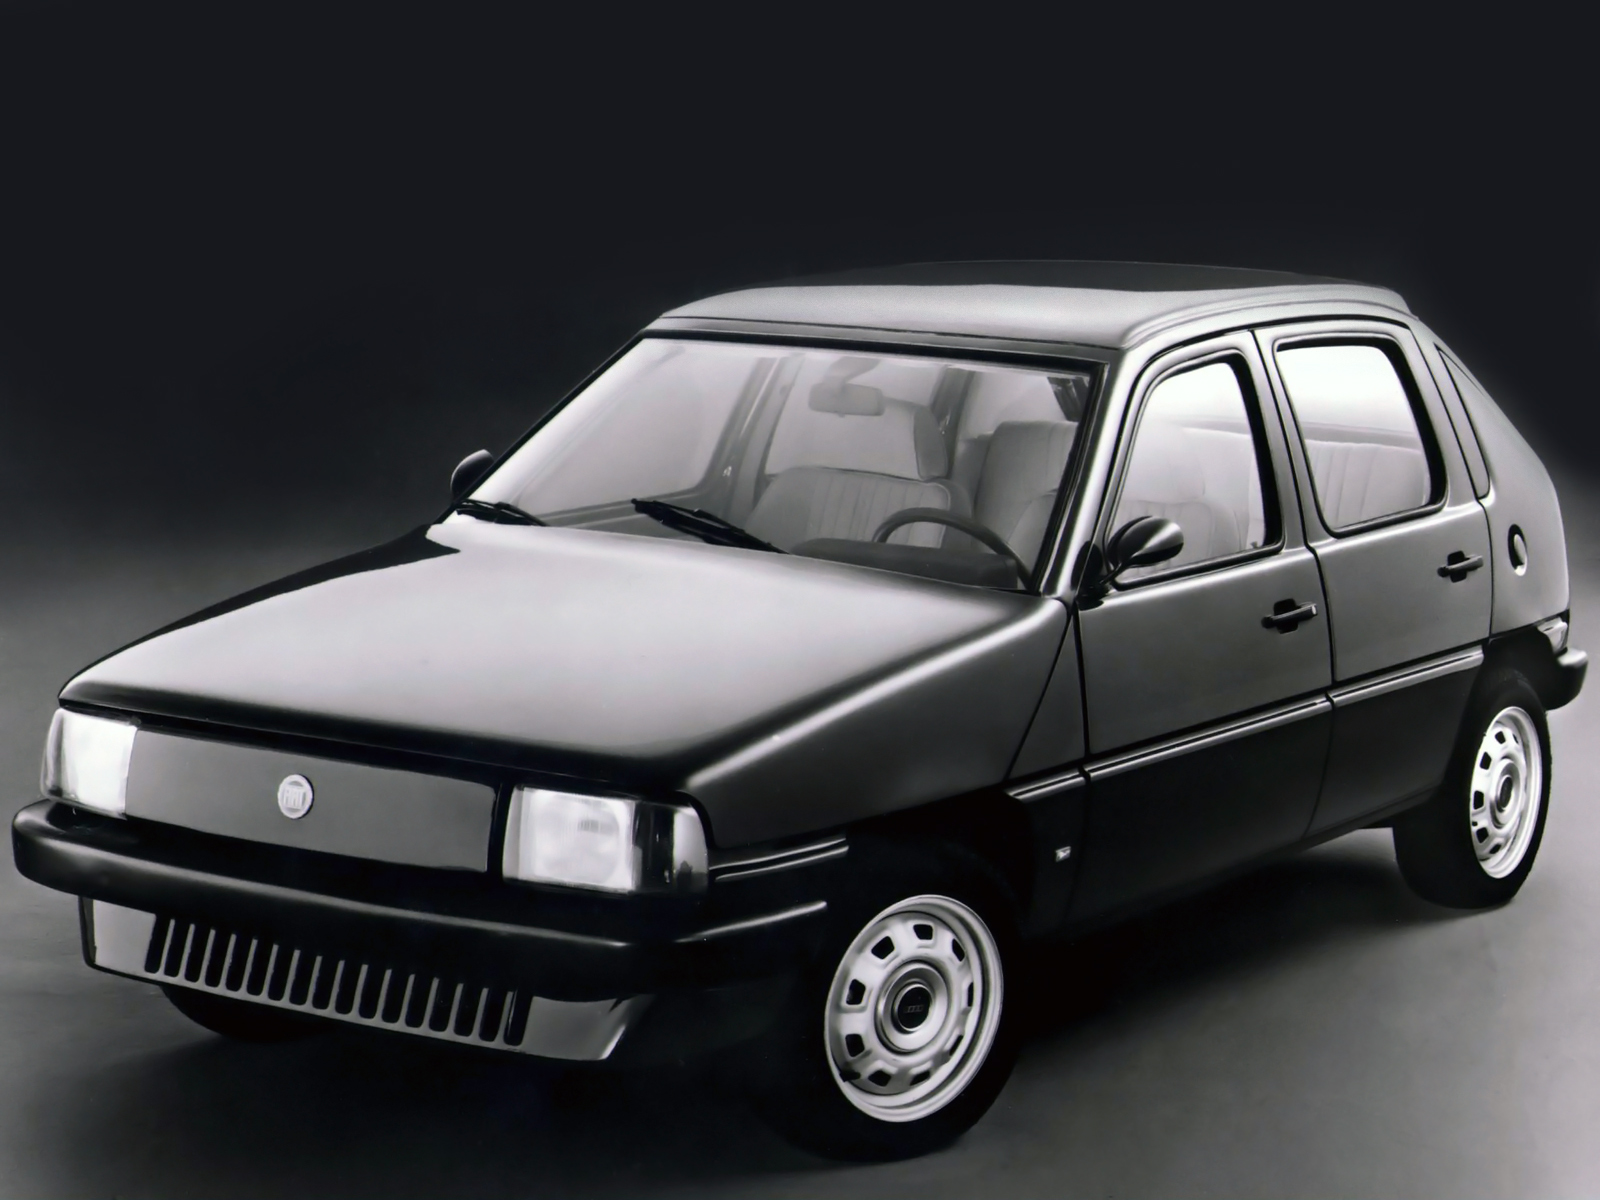 Fiat VSS (I.DE.A), 1981